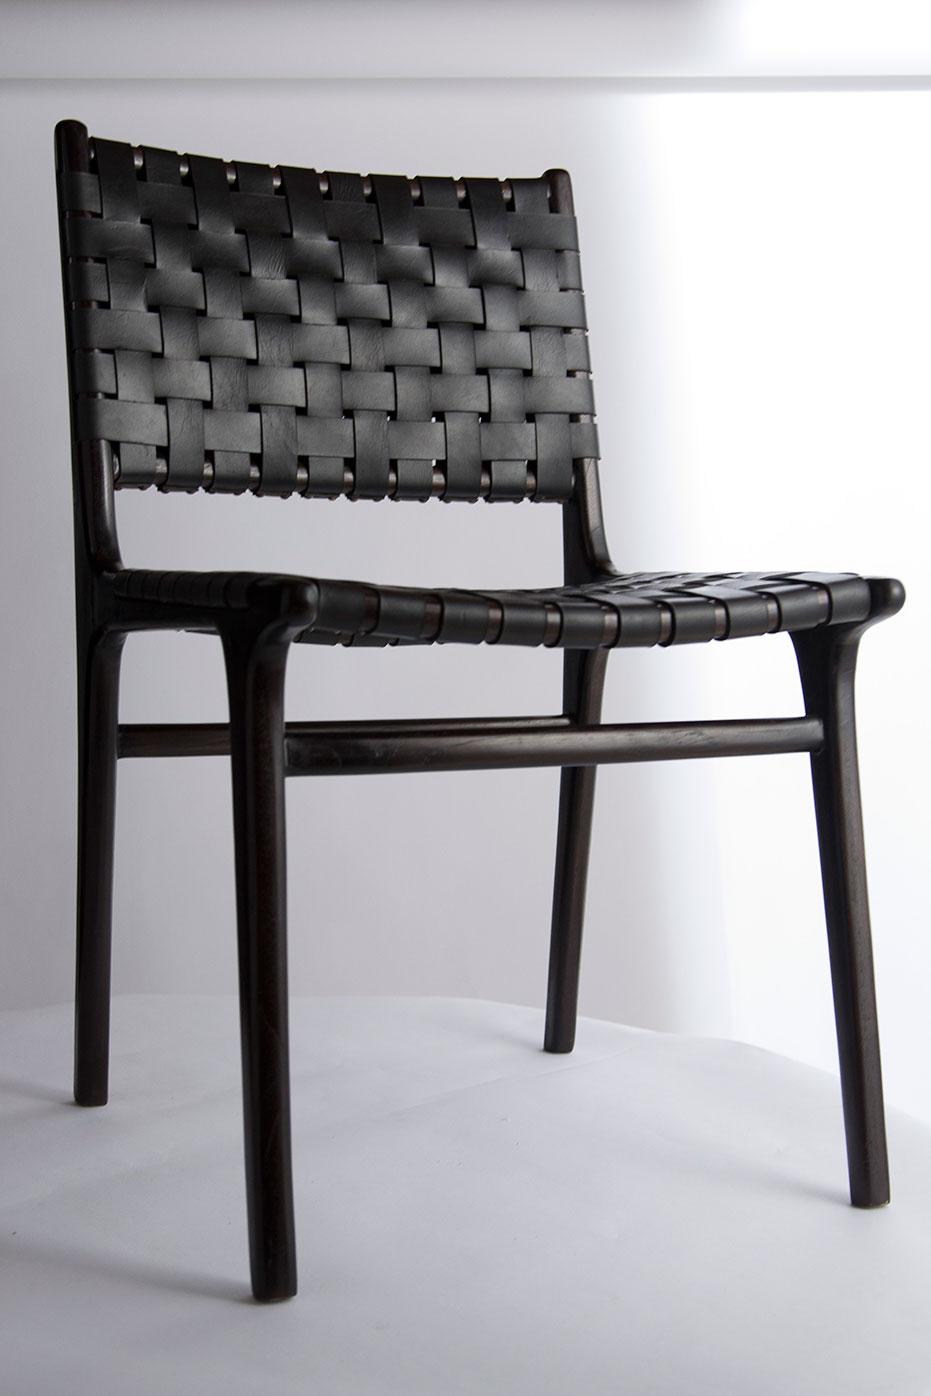 Cuir de première qualité avec cadre en teck.

Voici la chaise en cuir de première qualité dans le nouveau style tissé à double dossier. Nous utilisons du cuir de la plus haute qualité pour nos chaises modernes. Le cuir sélectionné à la main est